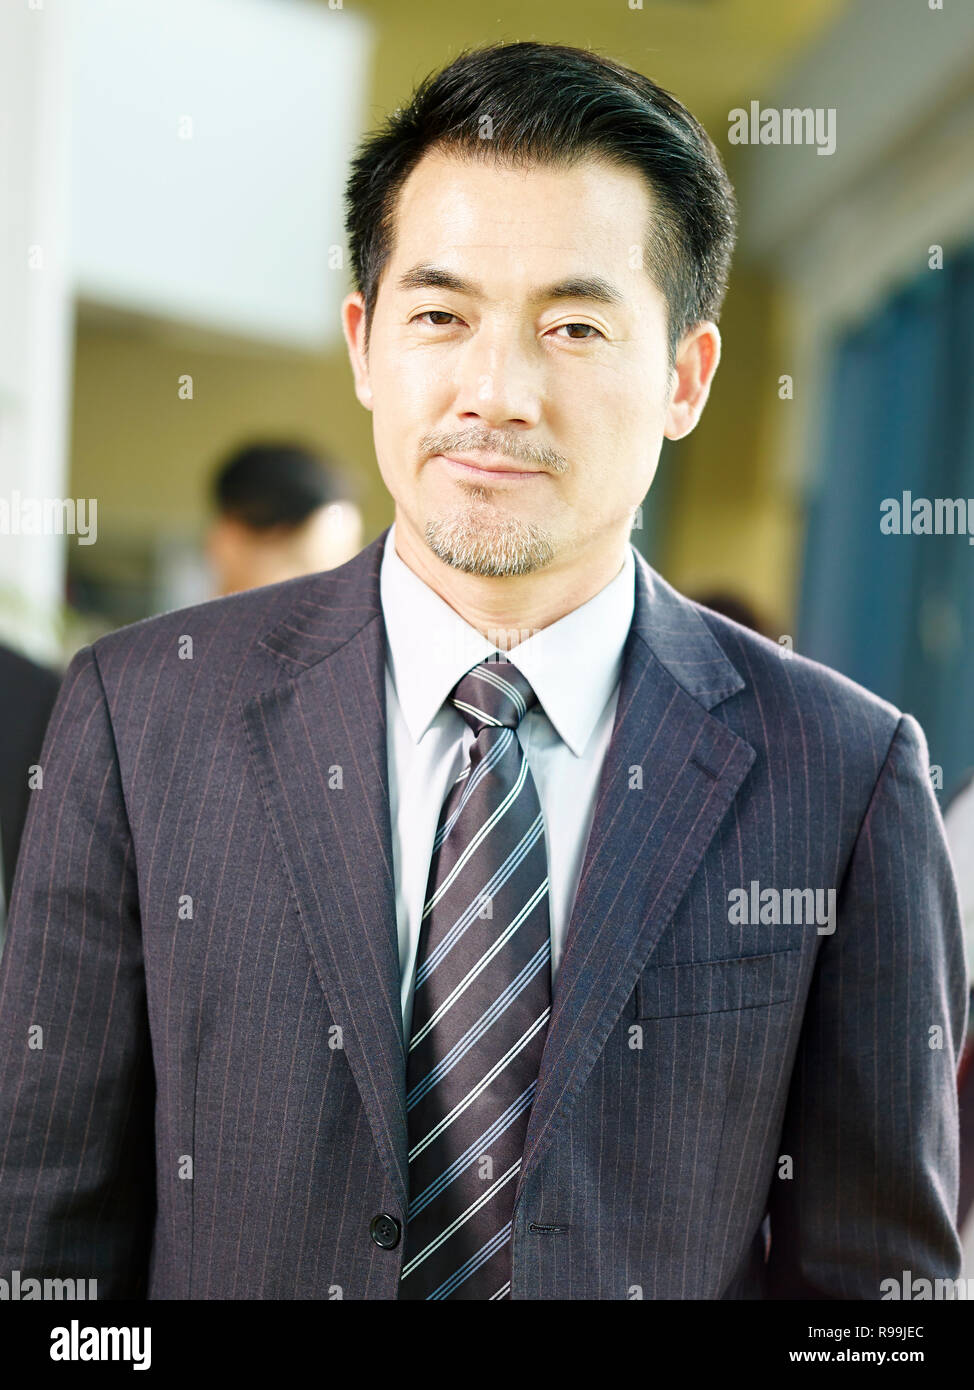 Ritratto di un senior asian corporate executive, guardando la fotocamera. Foto Stock